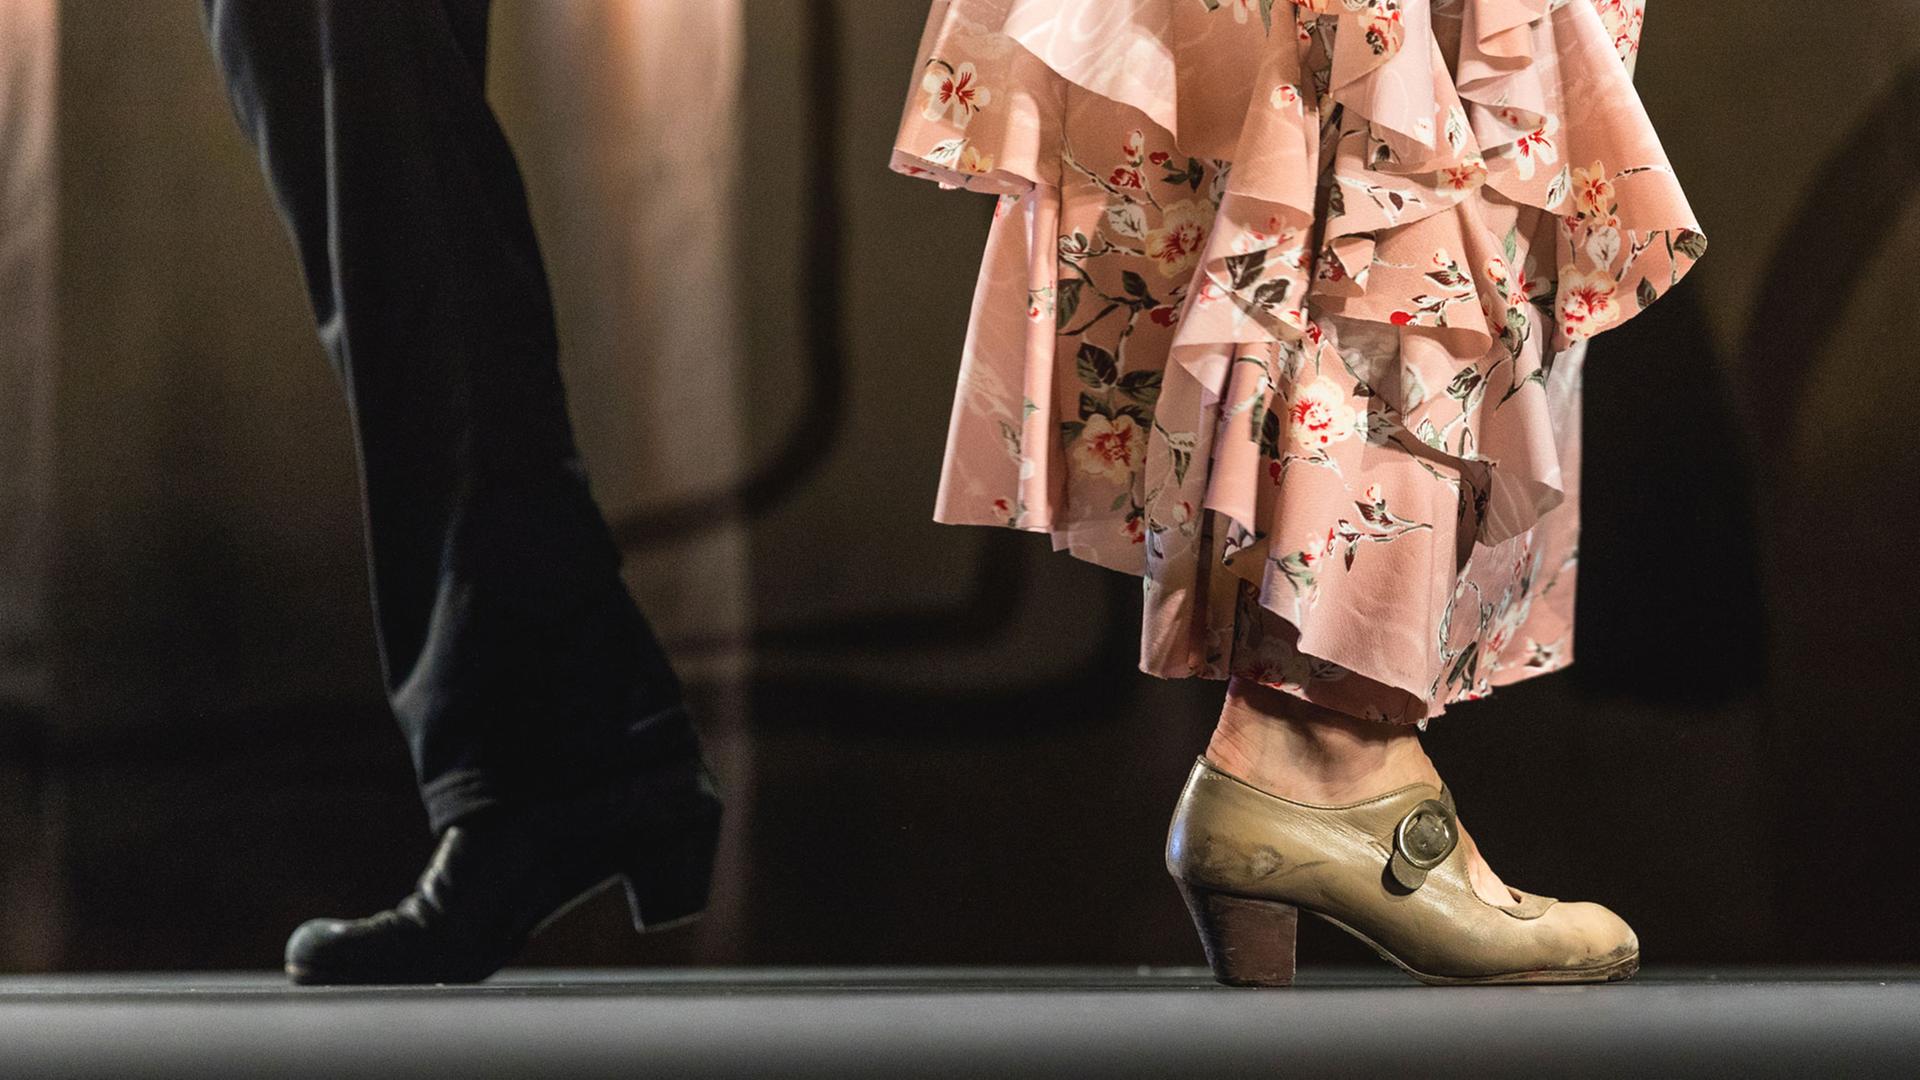  Die Beine von zwei Flamenco-Tänzern (Mann und Frau) sind bis zu den Knien zu sehen. Der Mann trägt eine schwarze Hose, die Frau ein rosafarbenes gestuftes Kleid bis zu den Knöcheln.